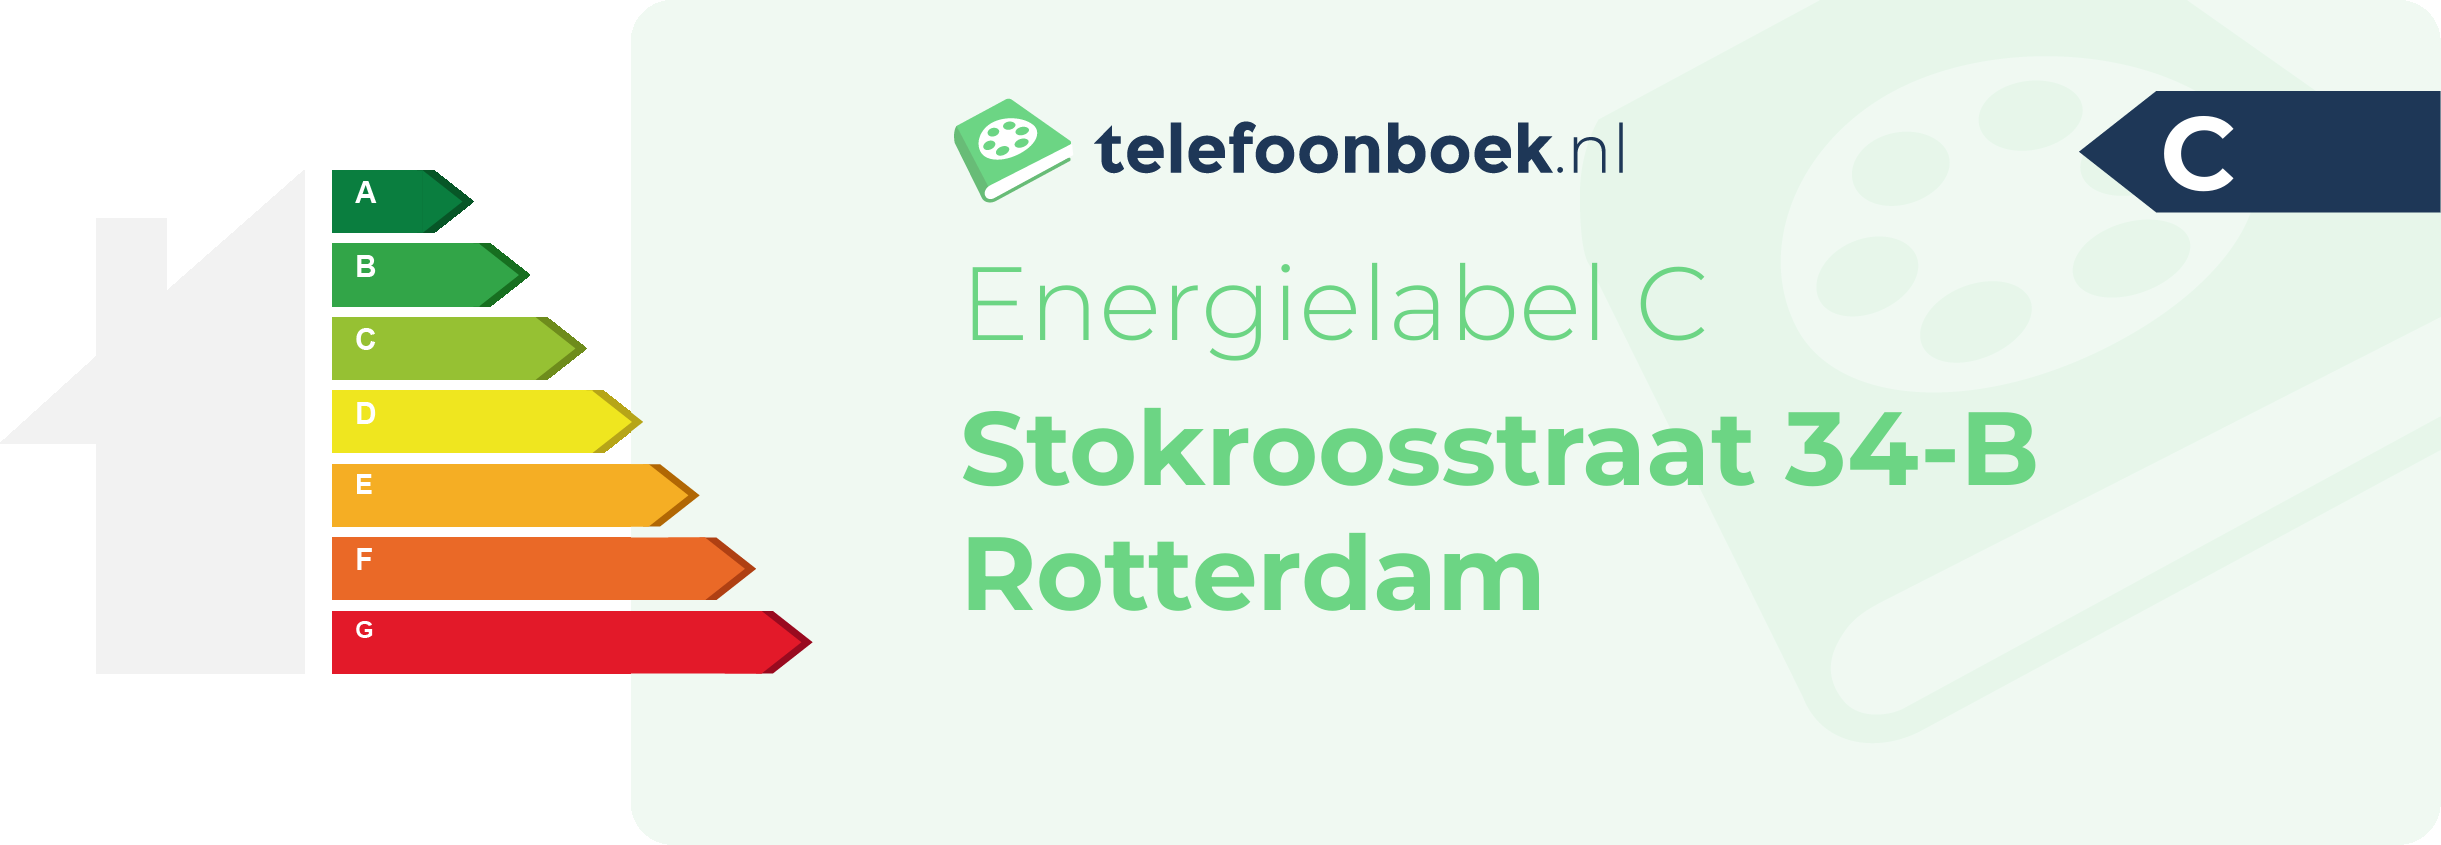 Energielabel Stokroosstraat 34-B Rotterdam